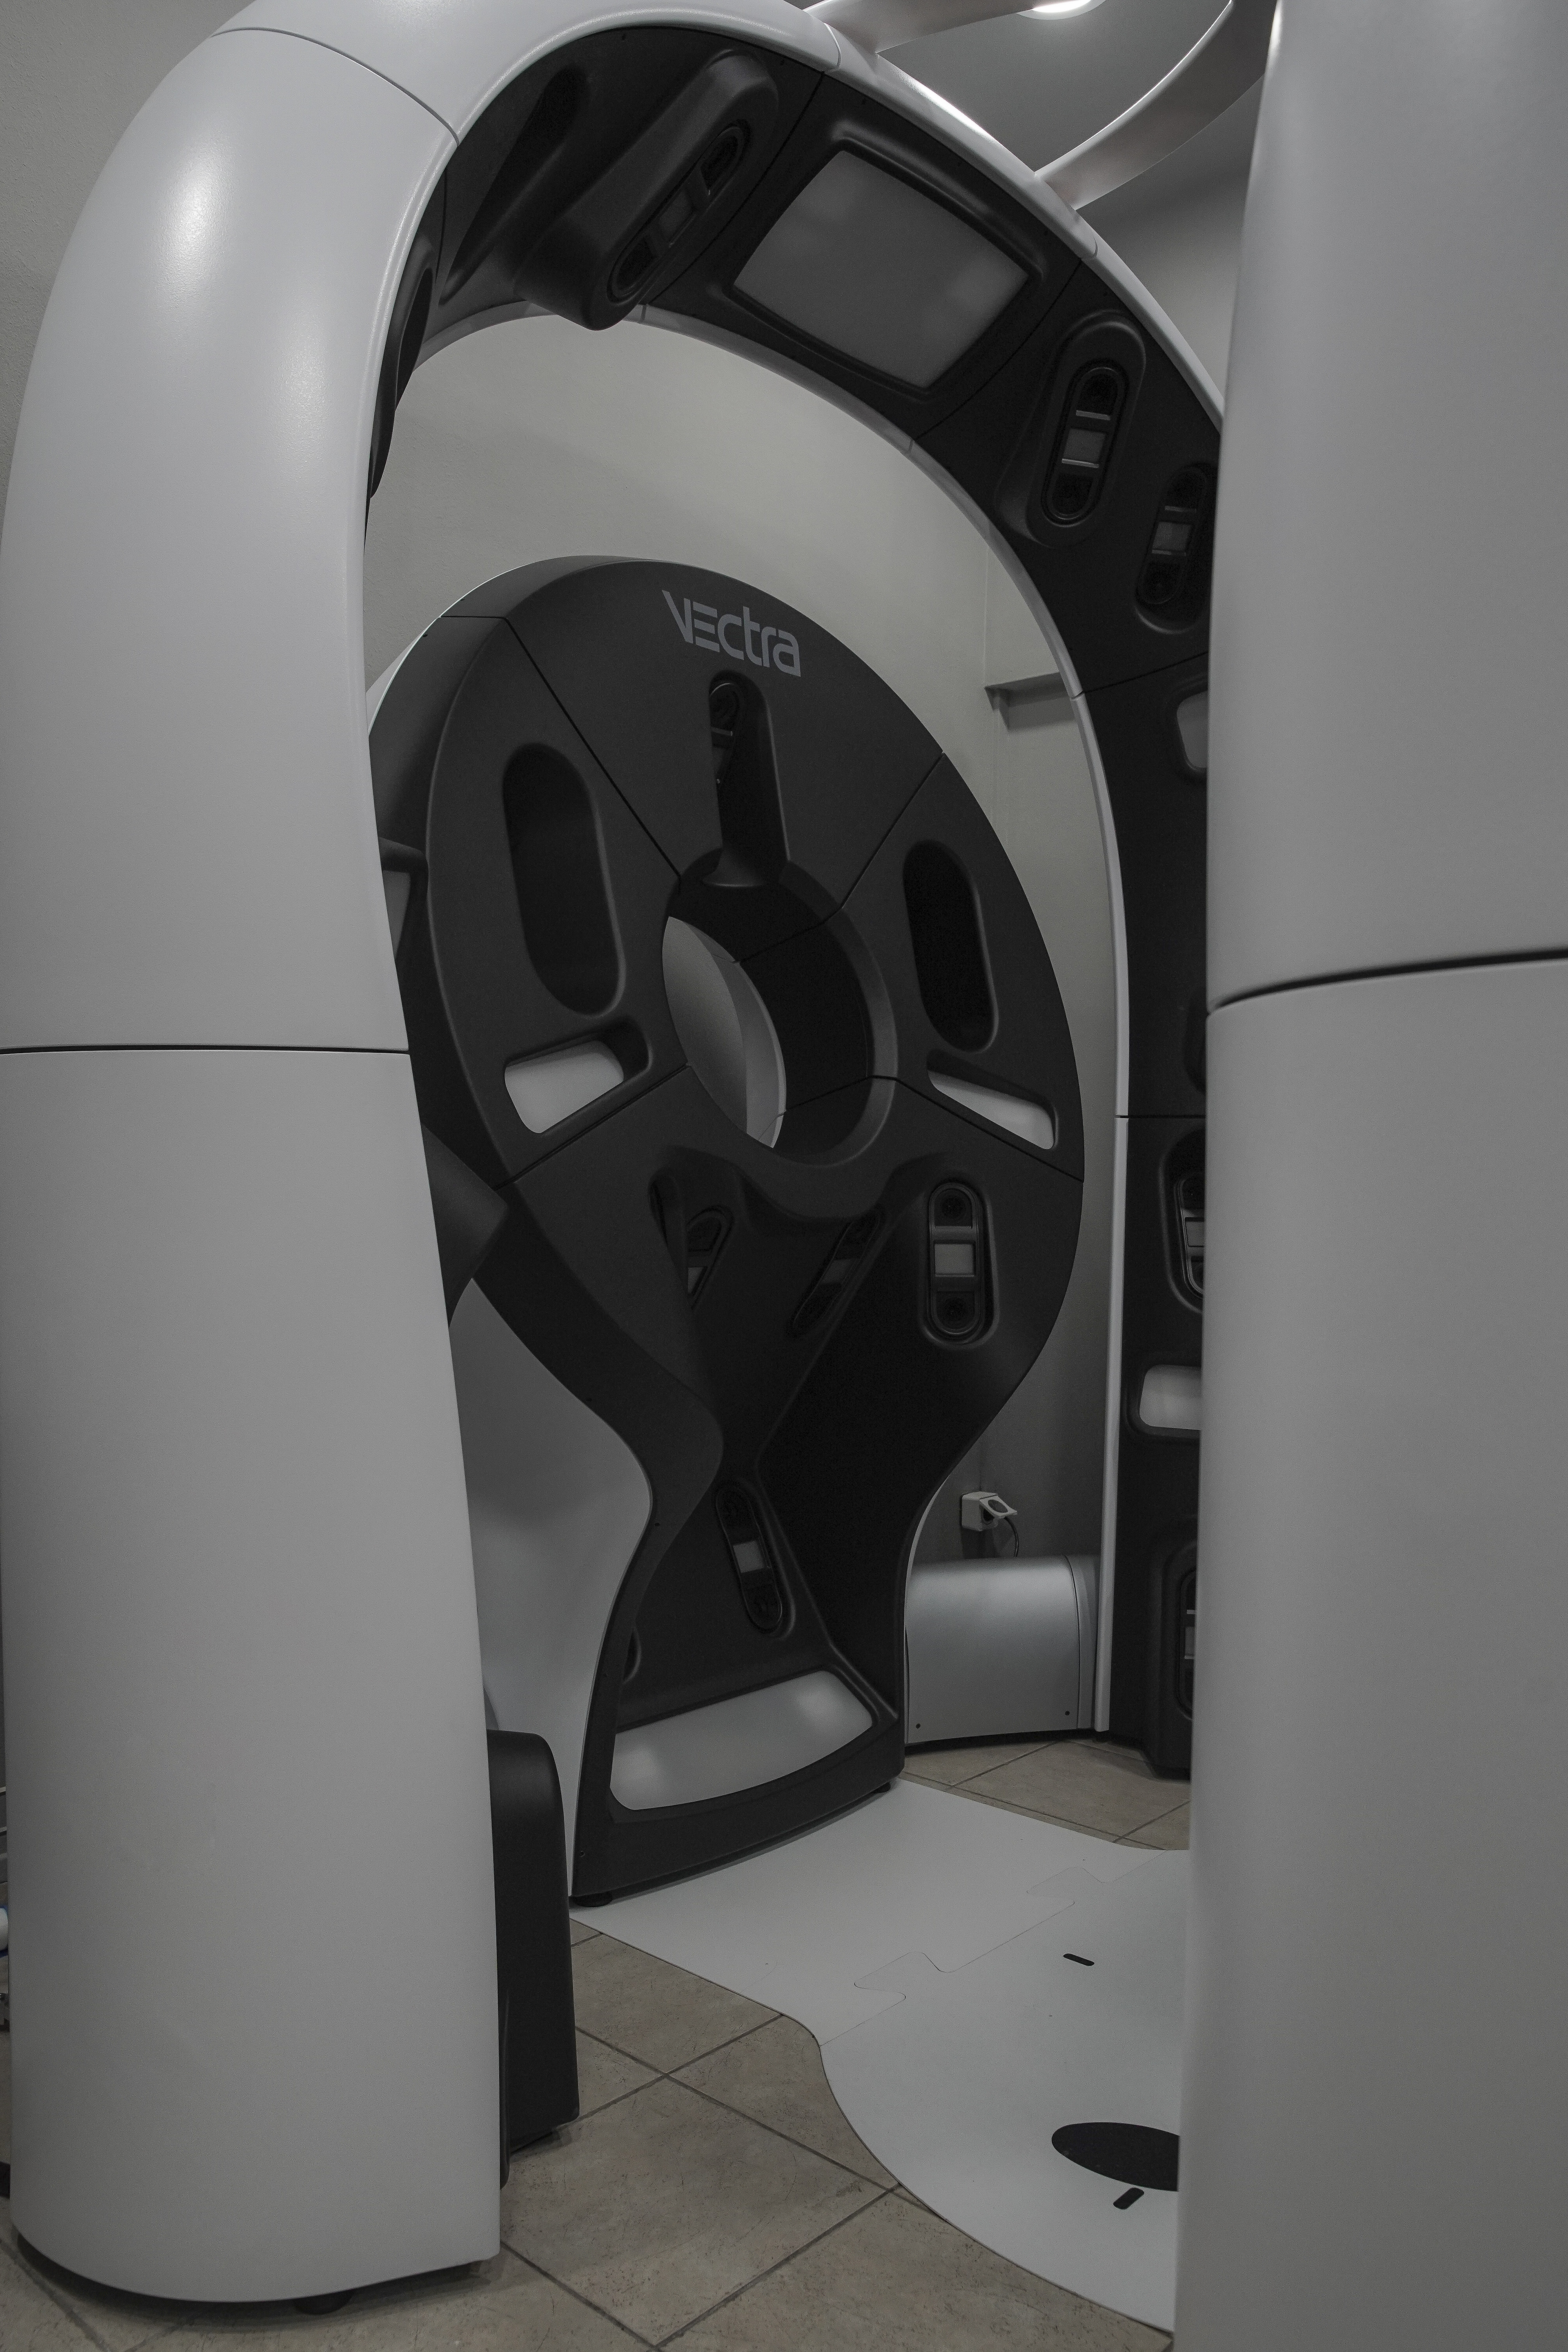 Το νέο υπερσύγχρονο μηχάνημα VECTRA WB360, αποκλειστική δωρεά του Ιδρύματος Ωνάση προς το νοσοκομείο 'Ανδρέας Συγγρός'